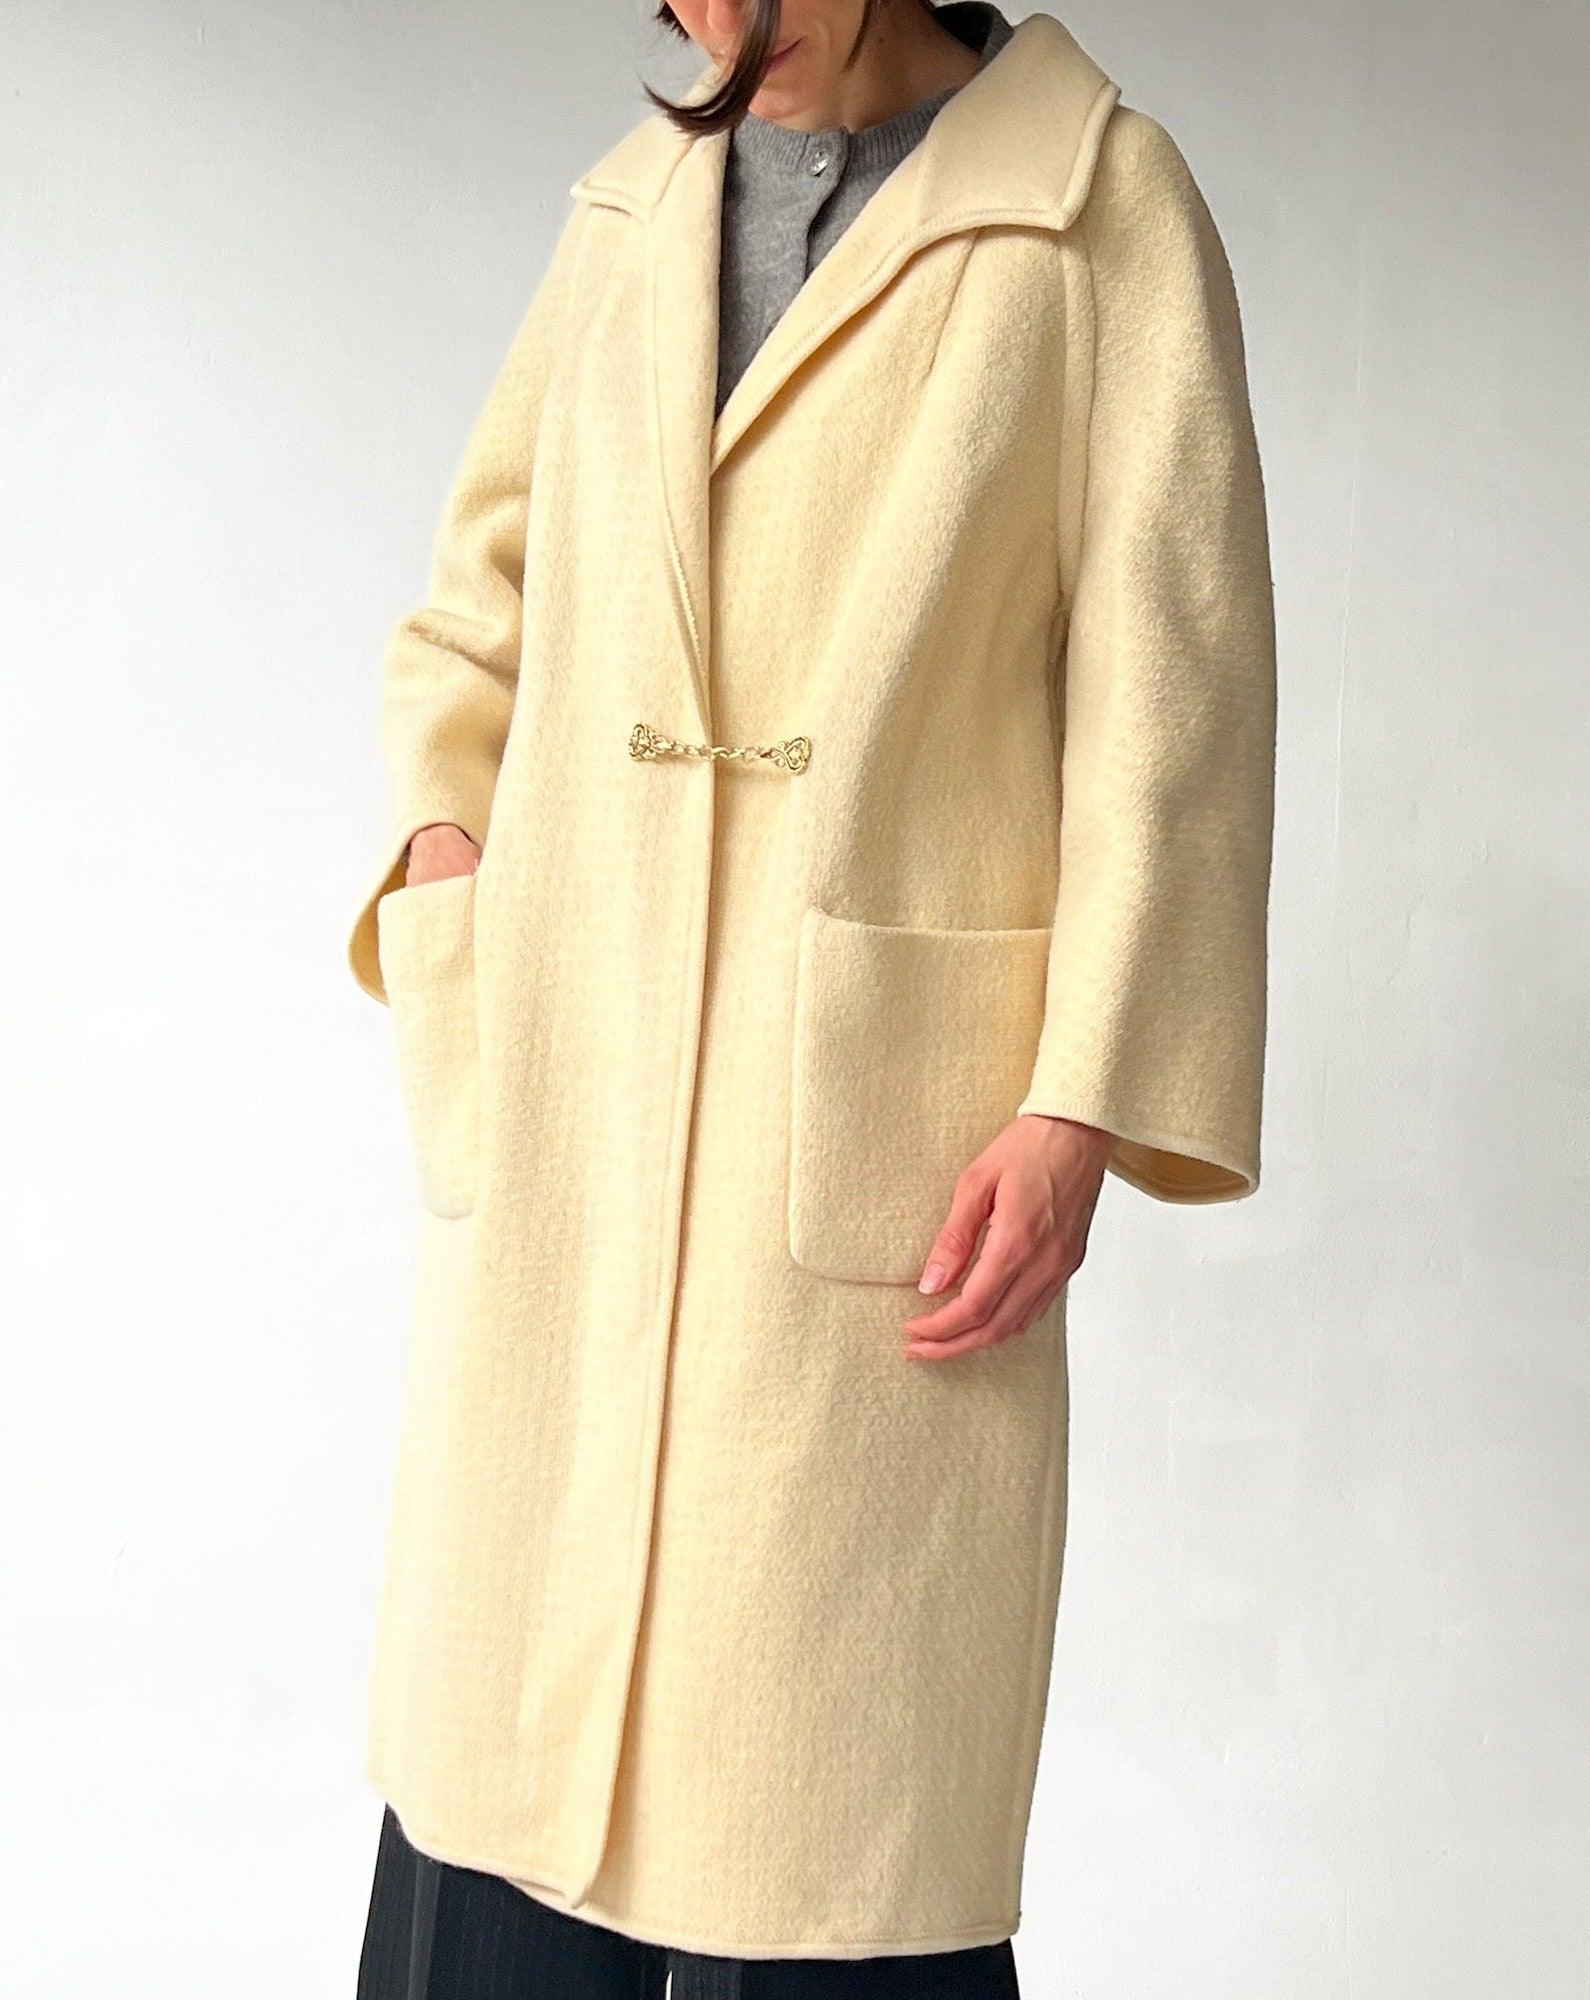 Cream Wool Blanket Overcoat (M)